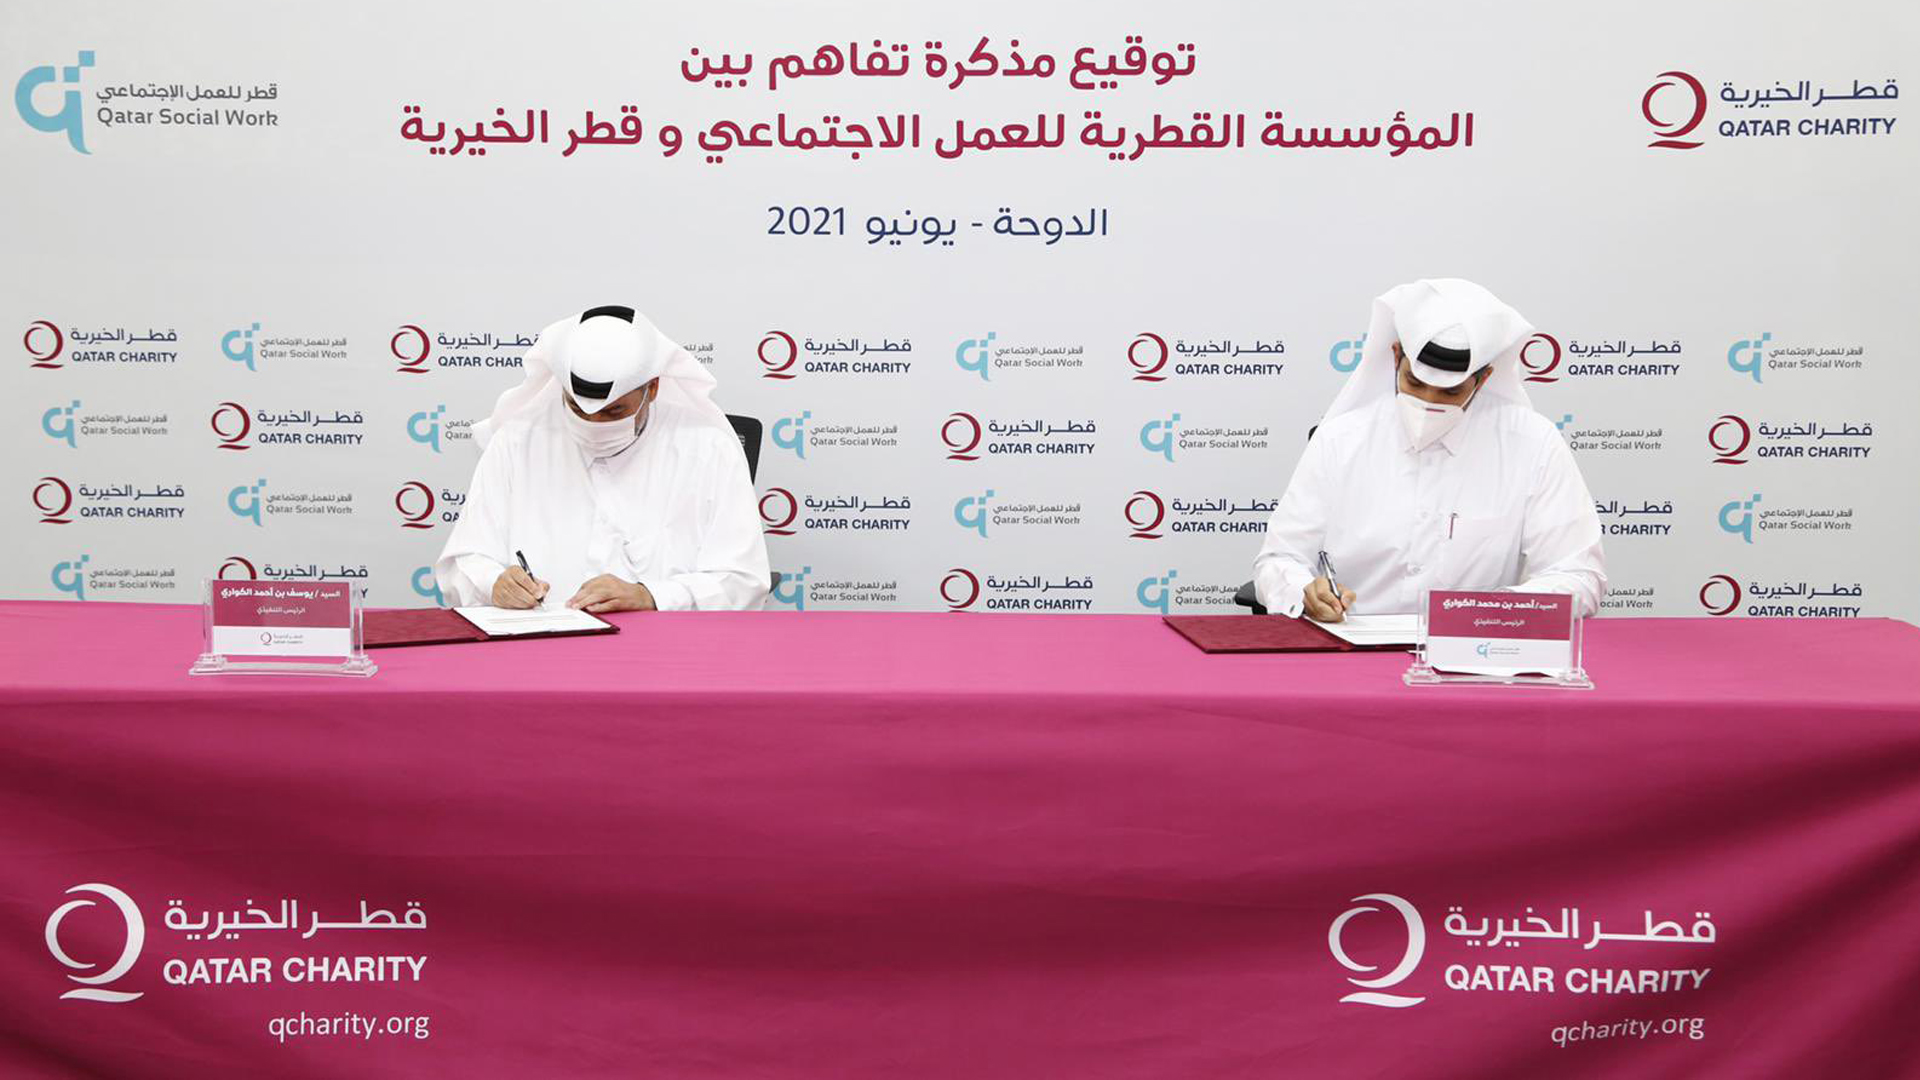 Qatar Foundation for Social Work, Qatar Charity Sign MoU